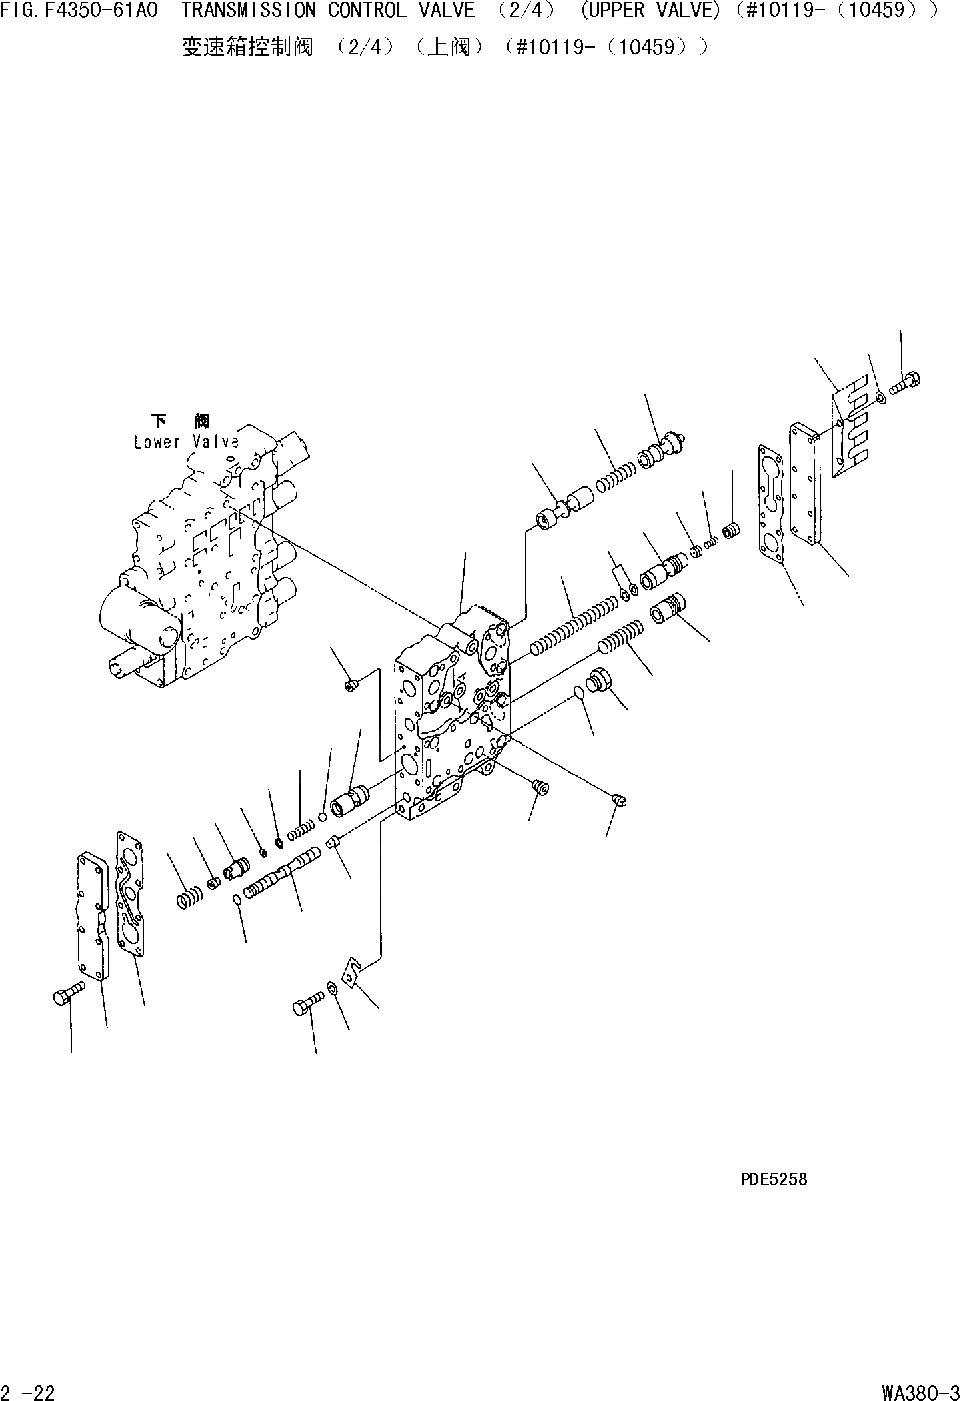 Схема запчастей Komatsu WA380-DZ-3 - КЛАПАН УПРАВЛЕНИЯ ТРАНСМИССИЕЙ(/)(ВЕРХНИЙ КЛАПАН) [ТРАНСМИССИЯ]